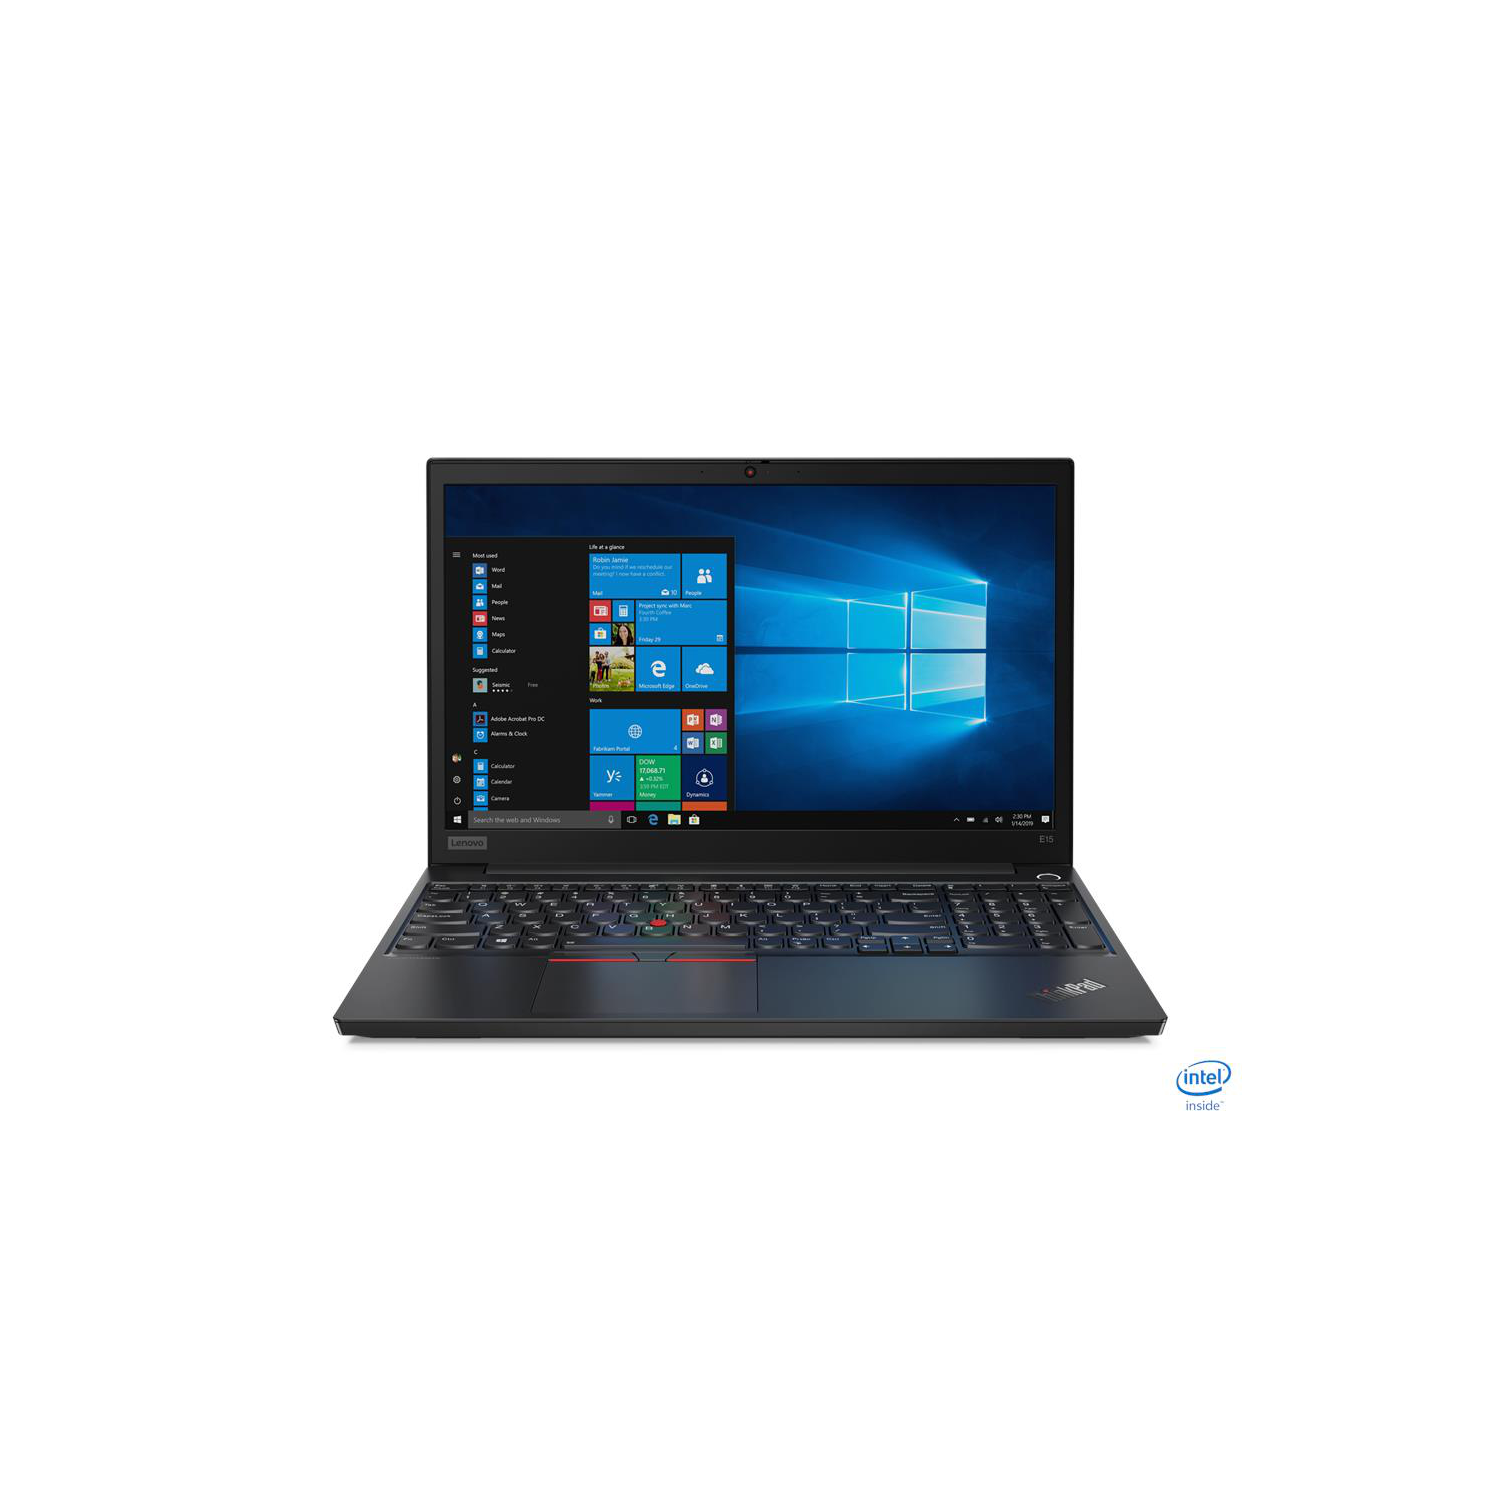 Lenovo ThinkPad E15 15.6'' Business Laptop - Black (Intel Core i3 10110U/500 GB HDD/4 GB RAM/Windows 10) - (20RD002TUS)